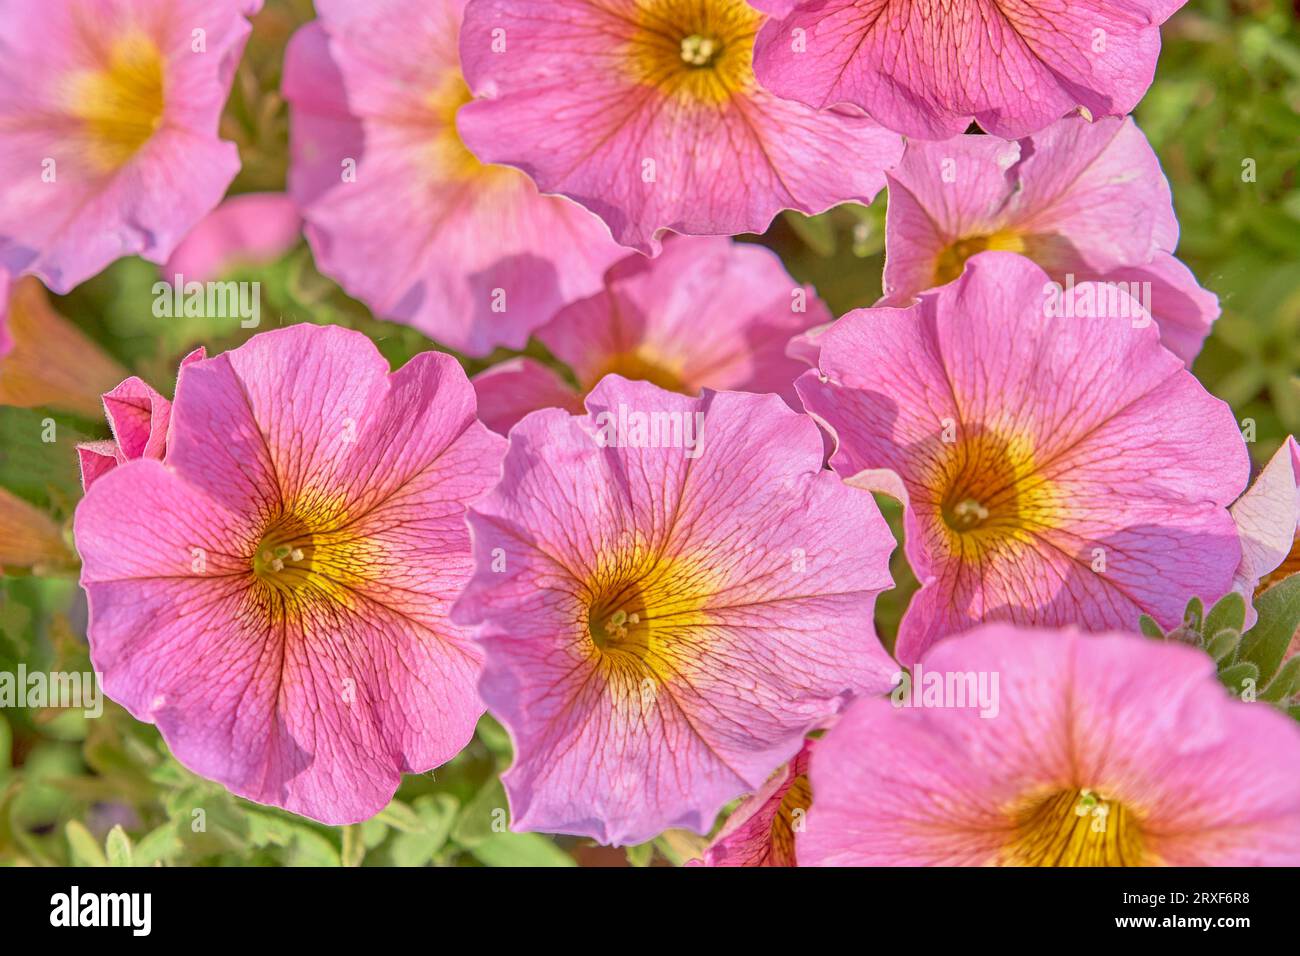 Fond floral d'été. Gros plan rose-jaune fleurs brillantes. Vue de dessus. Plante à fleurs décorative Petunia en aménagement paysager. Banque D'Images